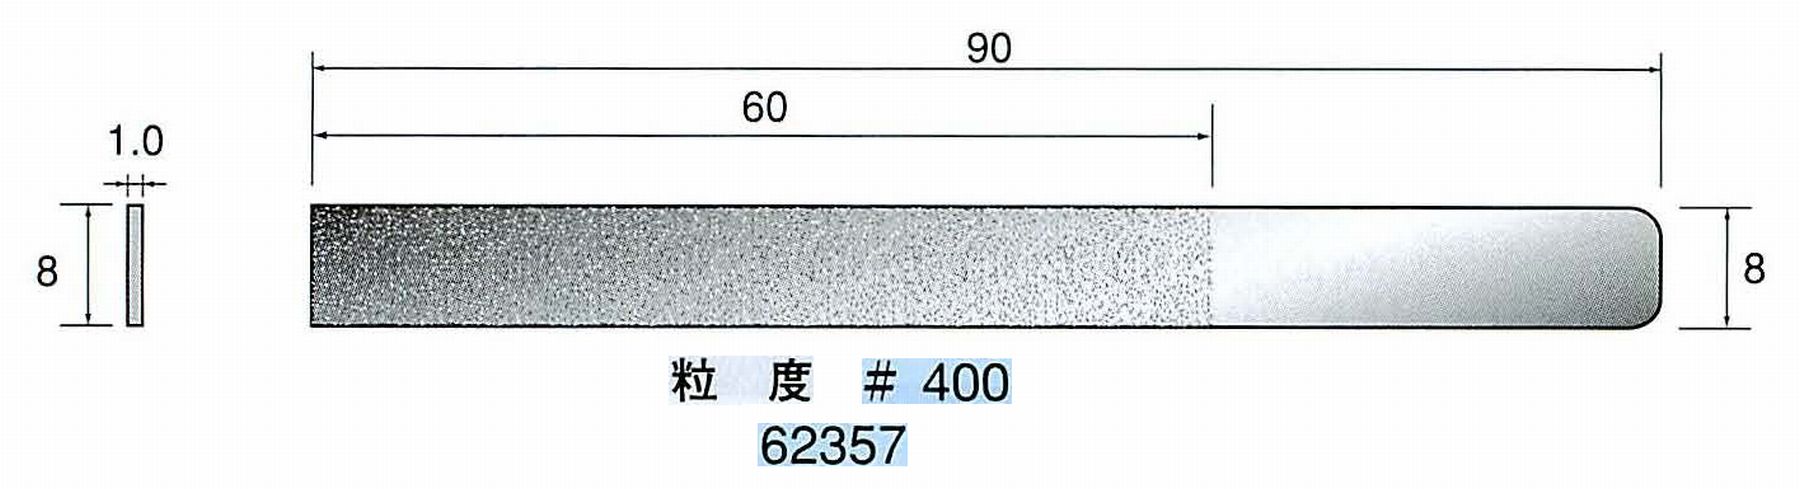 ナカニシ/NAKANISHI ハンディタイプ 電動・エアーヤスリ(往復動) ラスター専用工具 ダイヤモンドヤスリフラットタイプ 62357